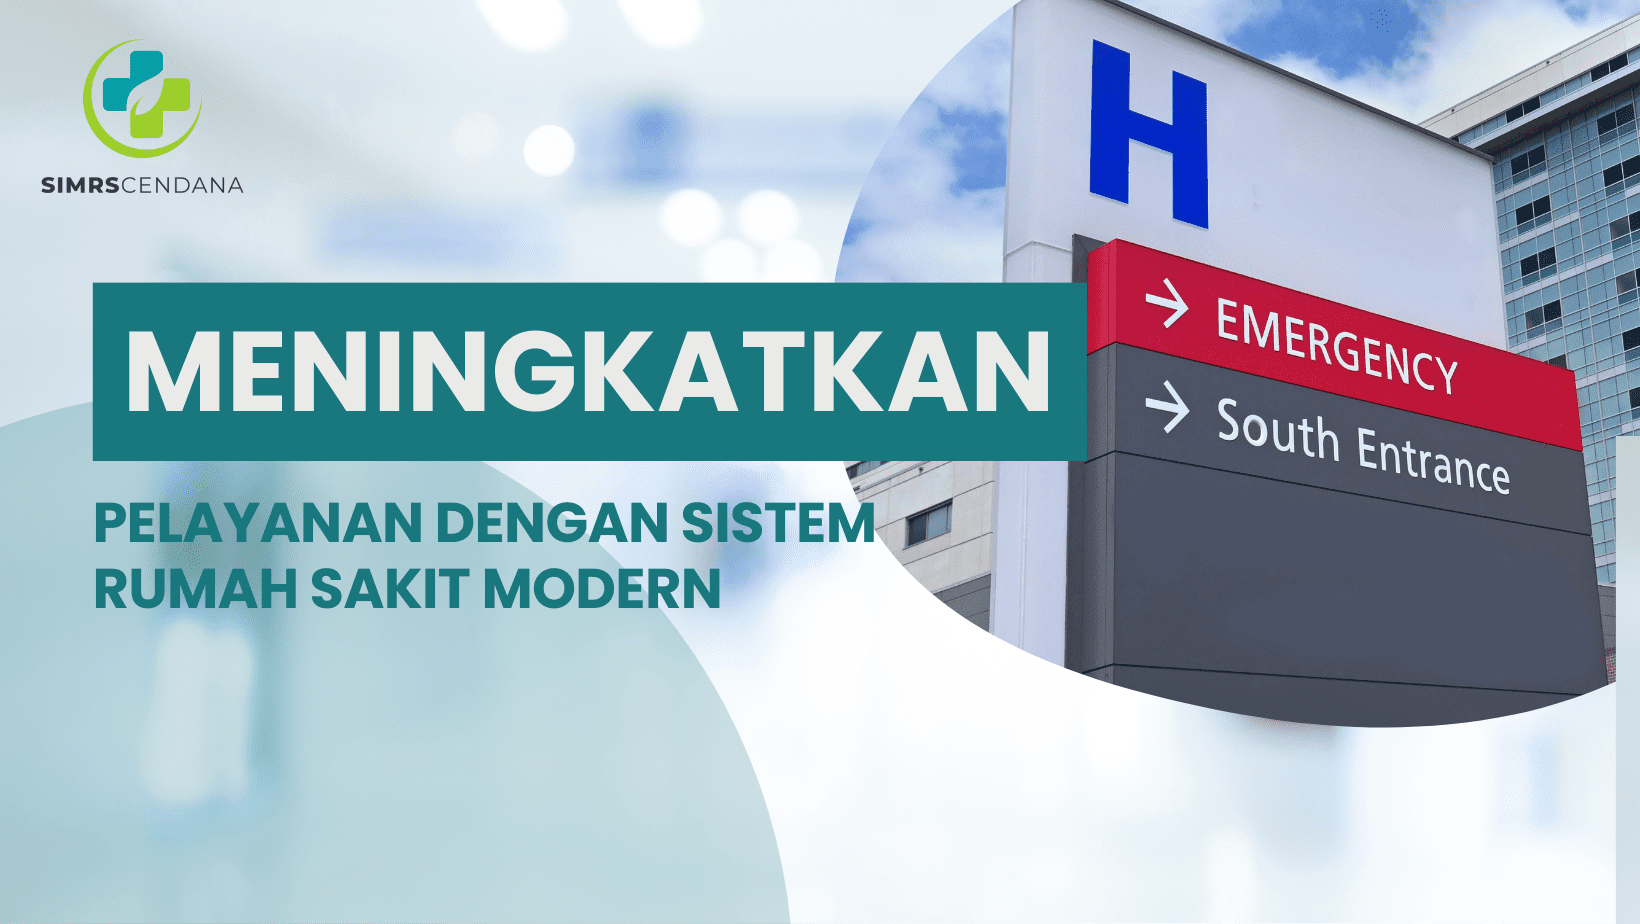 Meningkatkan pelayanan dengan Sistem Rumah Sakit Modern